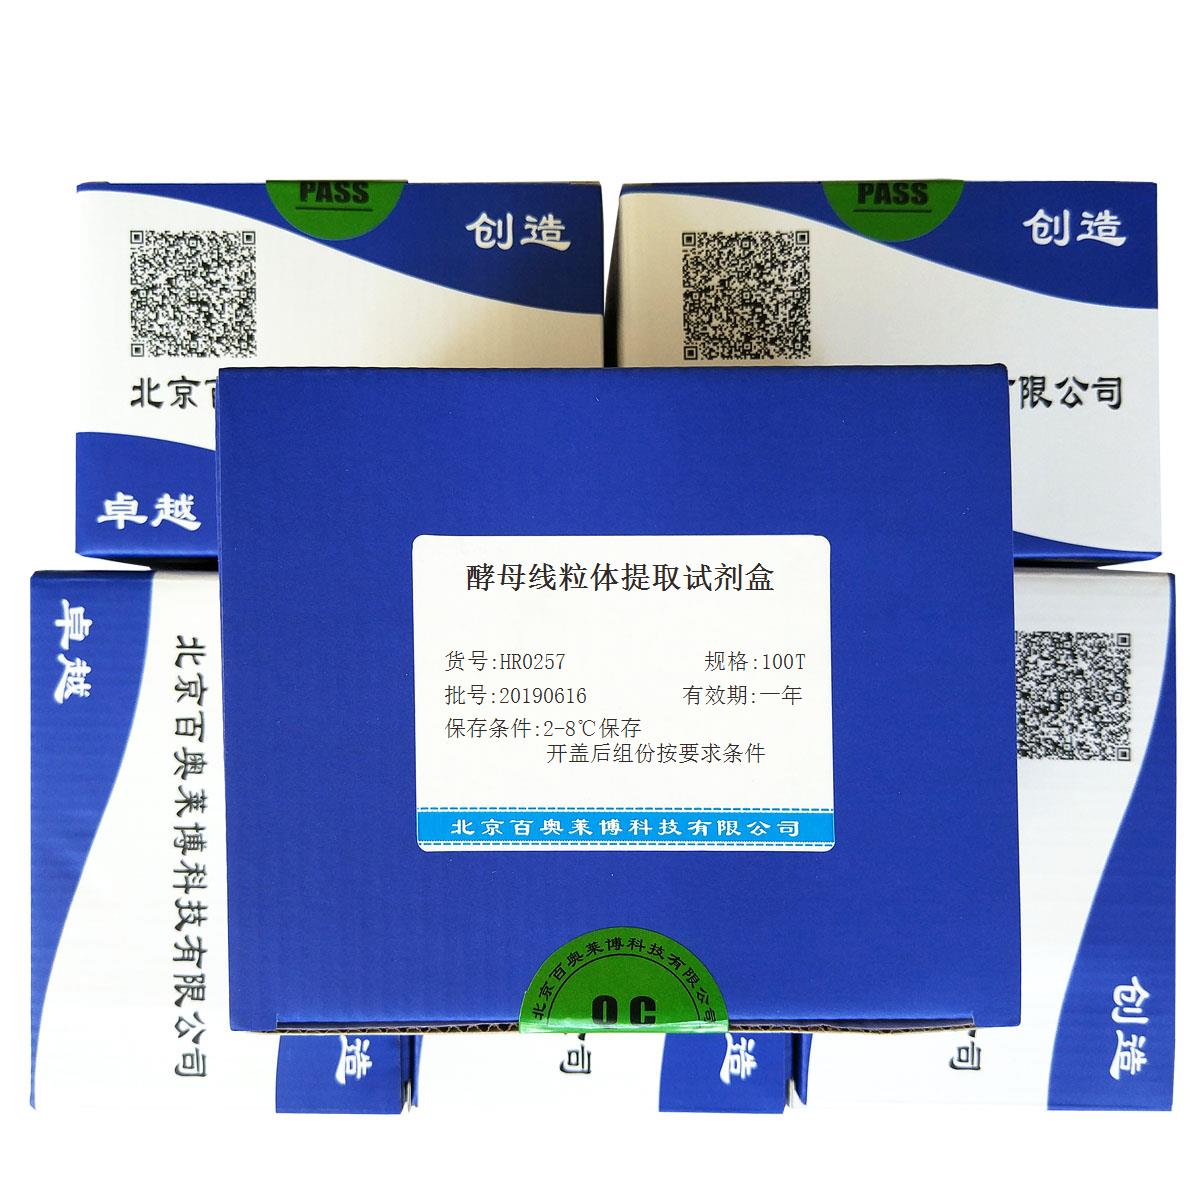 酵母线粒体提取试剂盒北京价格